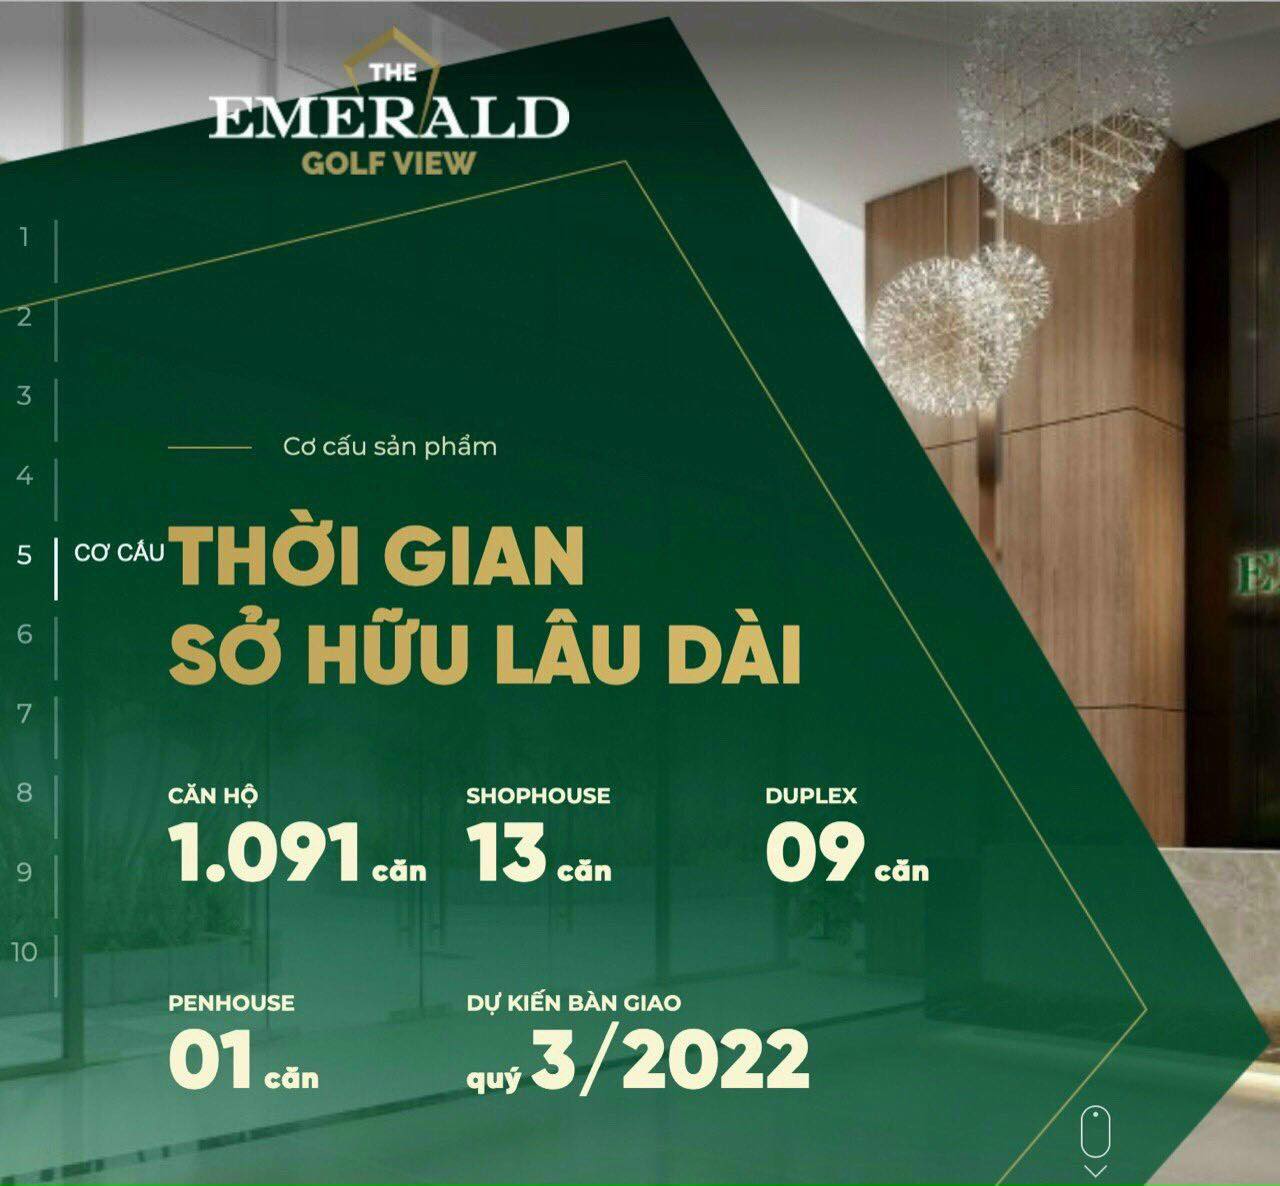 Chỉ cần 100 triệu ký hợp đồng mua bán dự án Emerald Golf View 660000000 đ